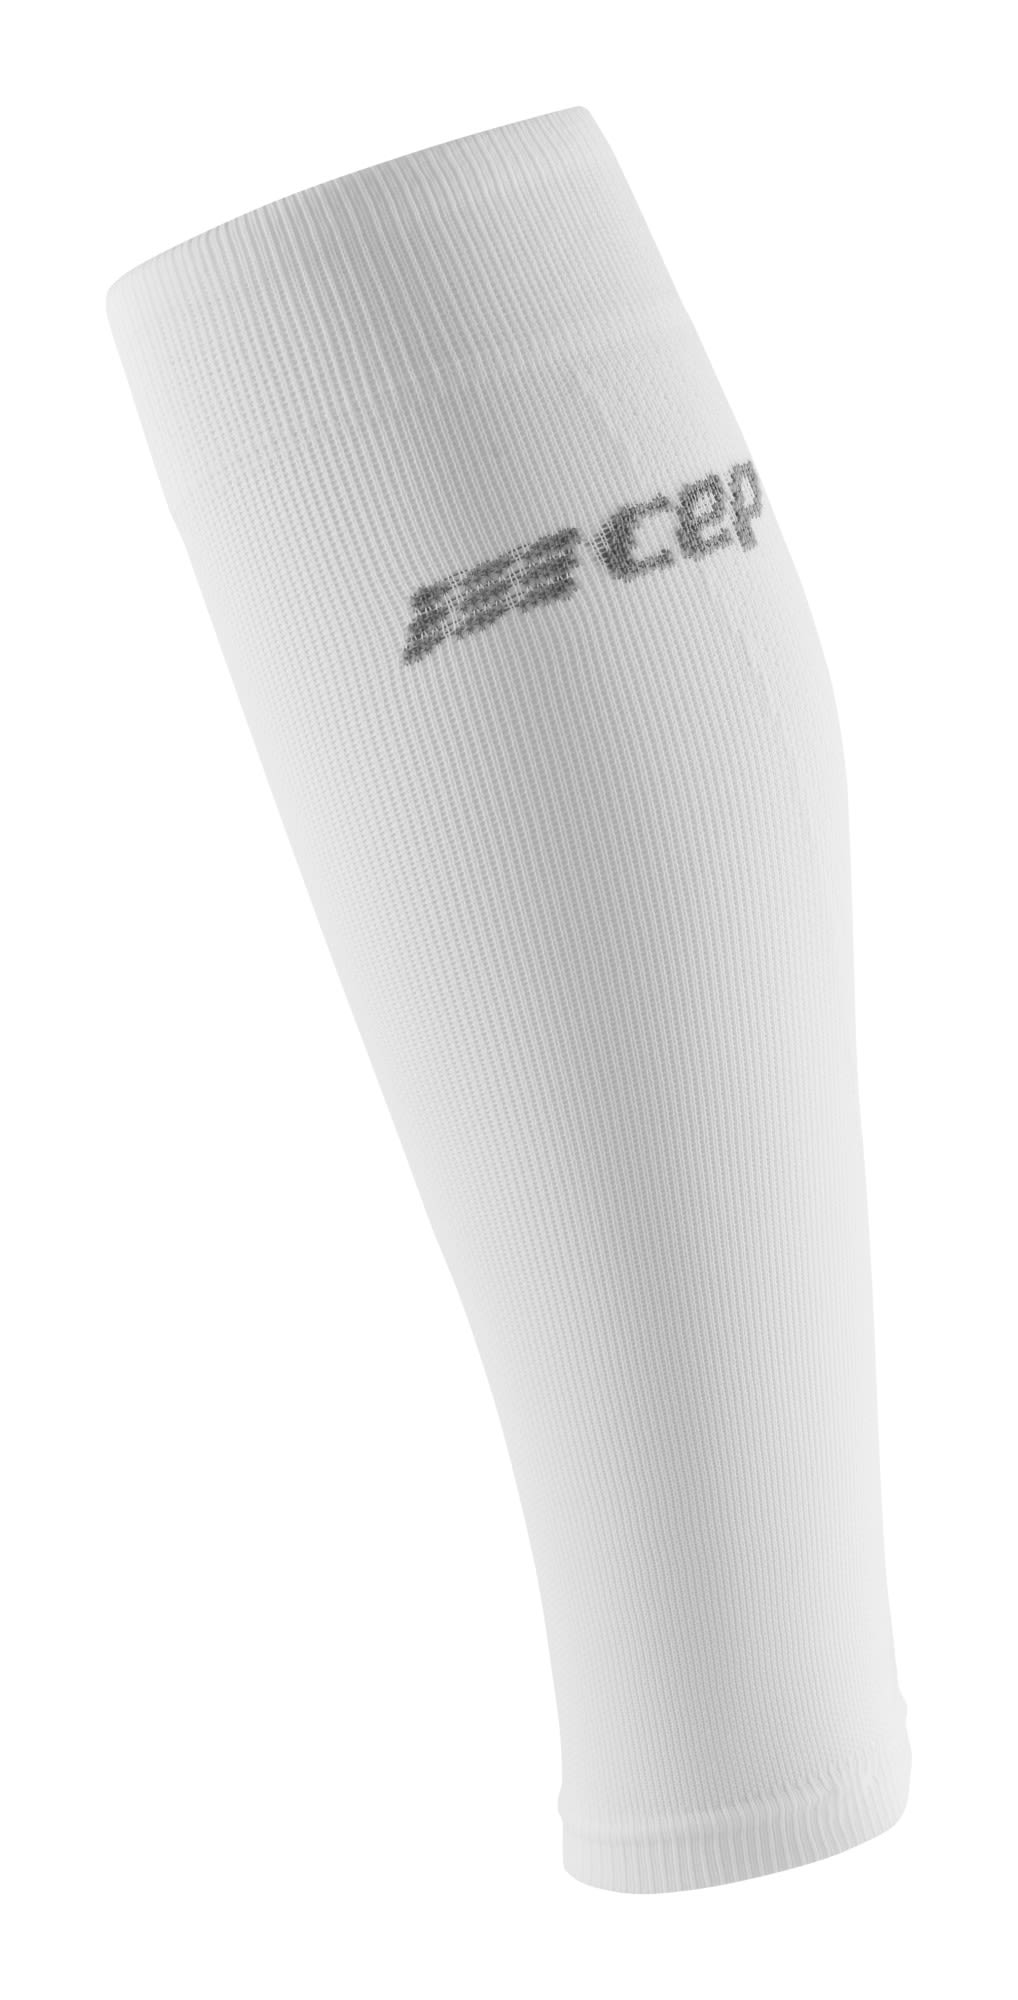 Cep M Ultralight Calf Sleeves Weiß | Größe III | Herren Kompressionssocken